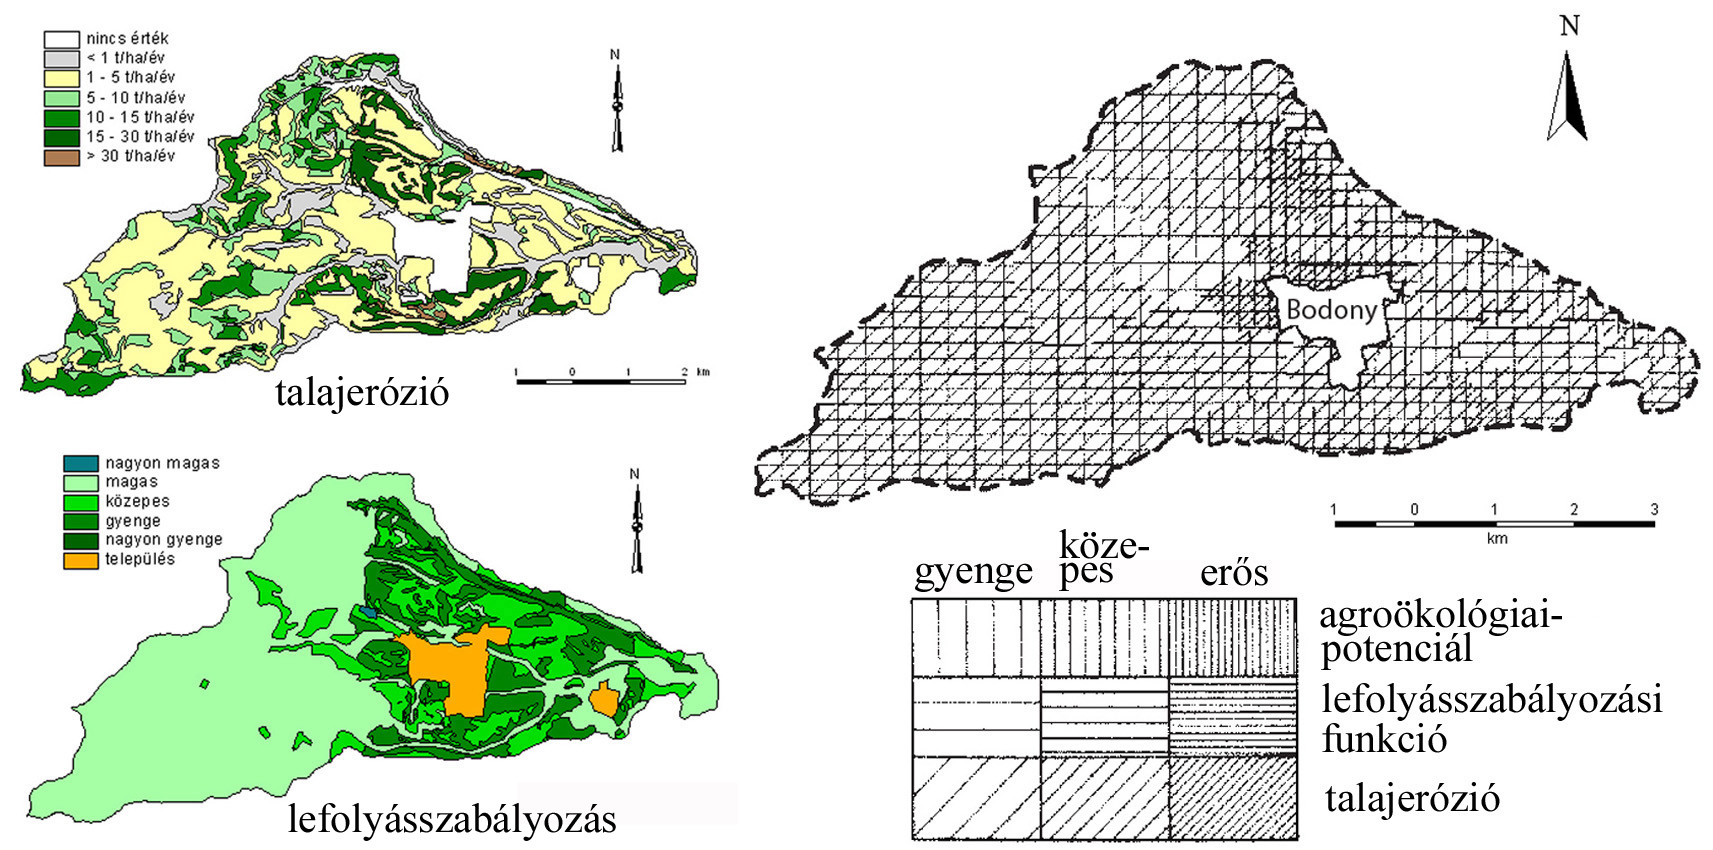 Az agroökológiai potenciál, mint a talajerózió és a lefolyásszabályozási funkció kombinációja